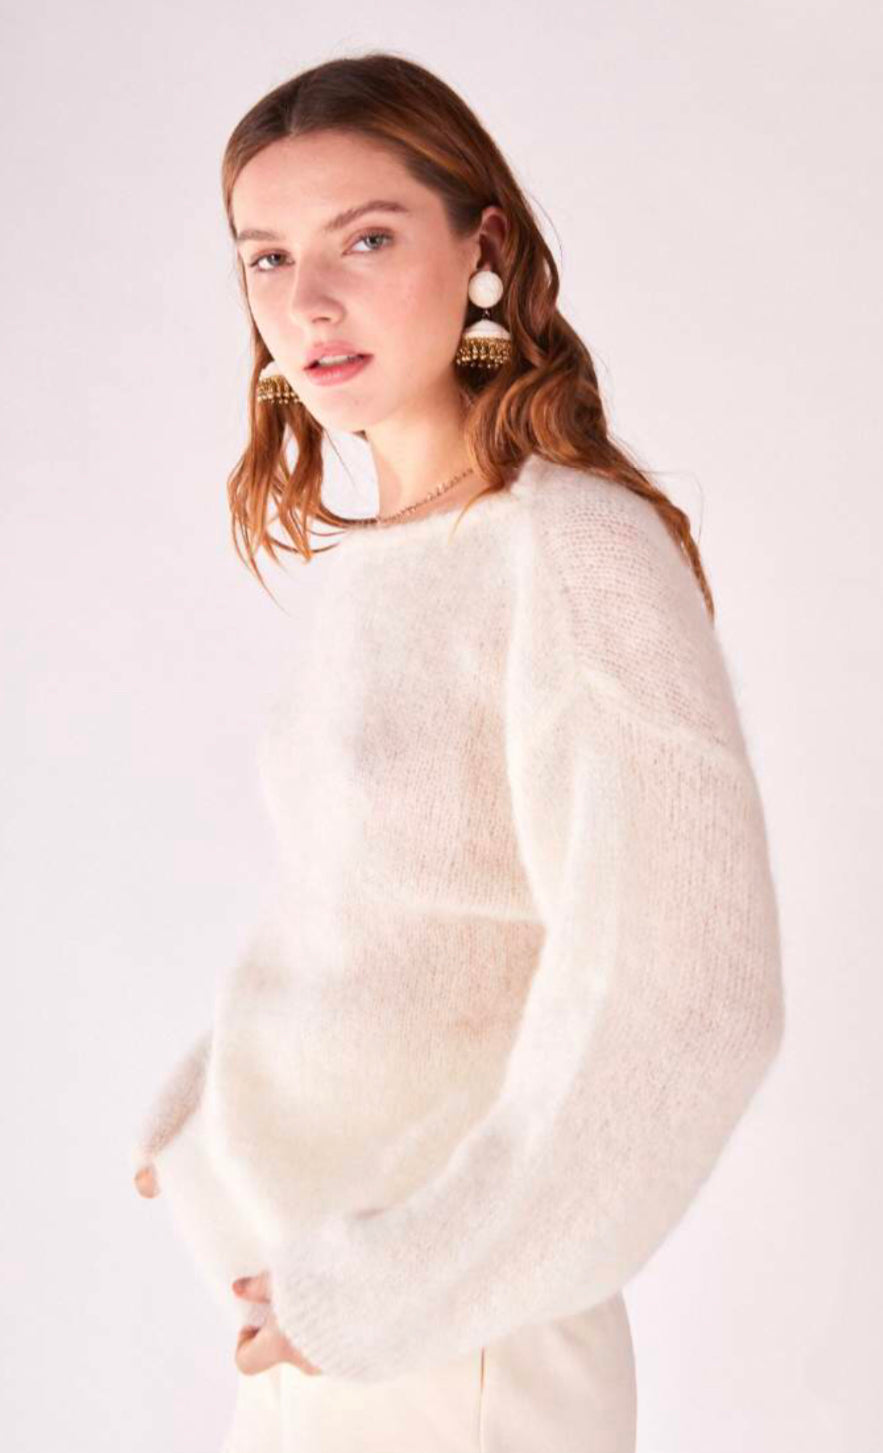 Orfeo Paris - Patty knitwear